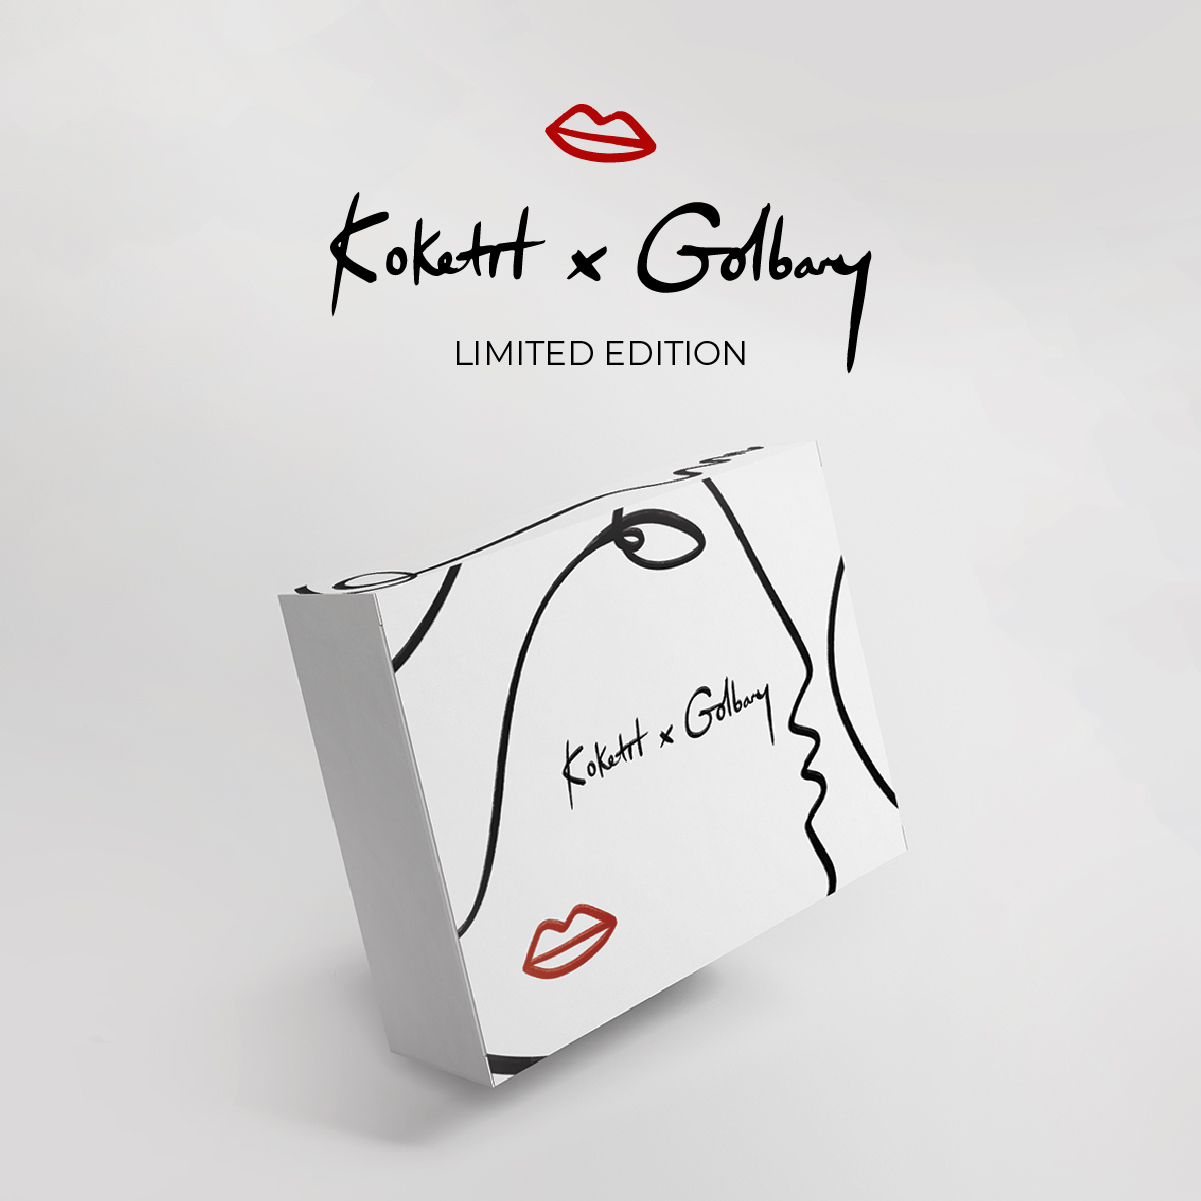 Koketit X Golbary ❤
הקוקלציה המשותפת זמינה בלעדית באתר! אל תפספסי אותה